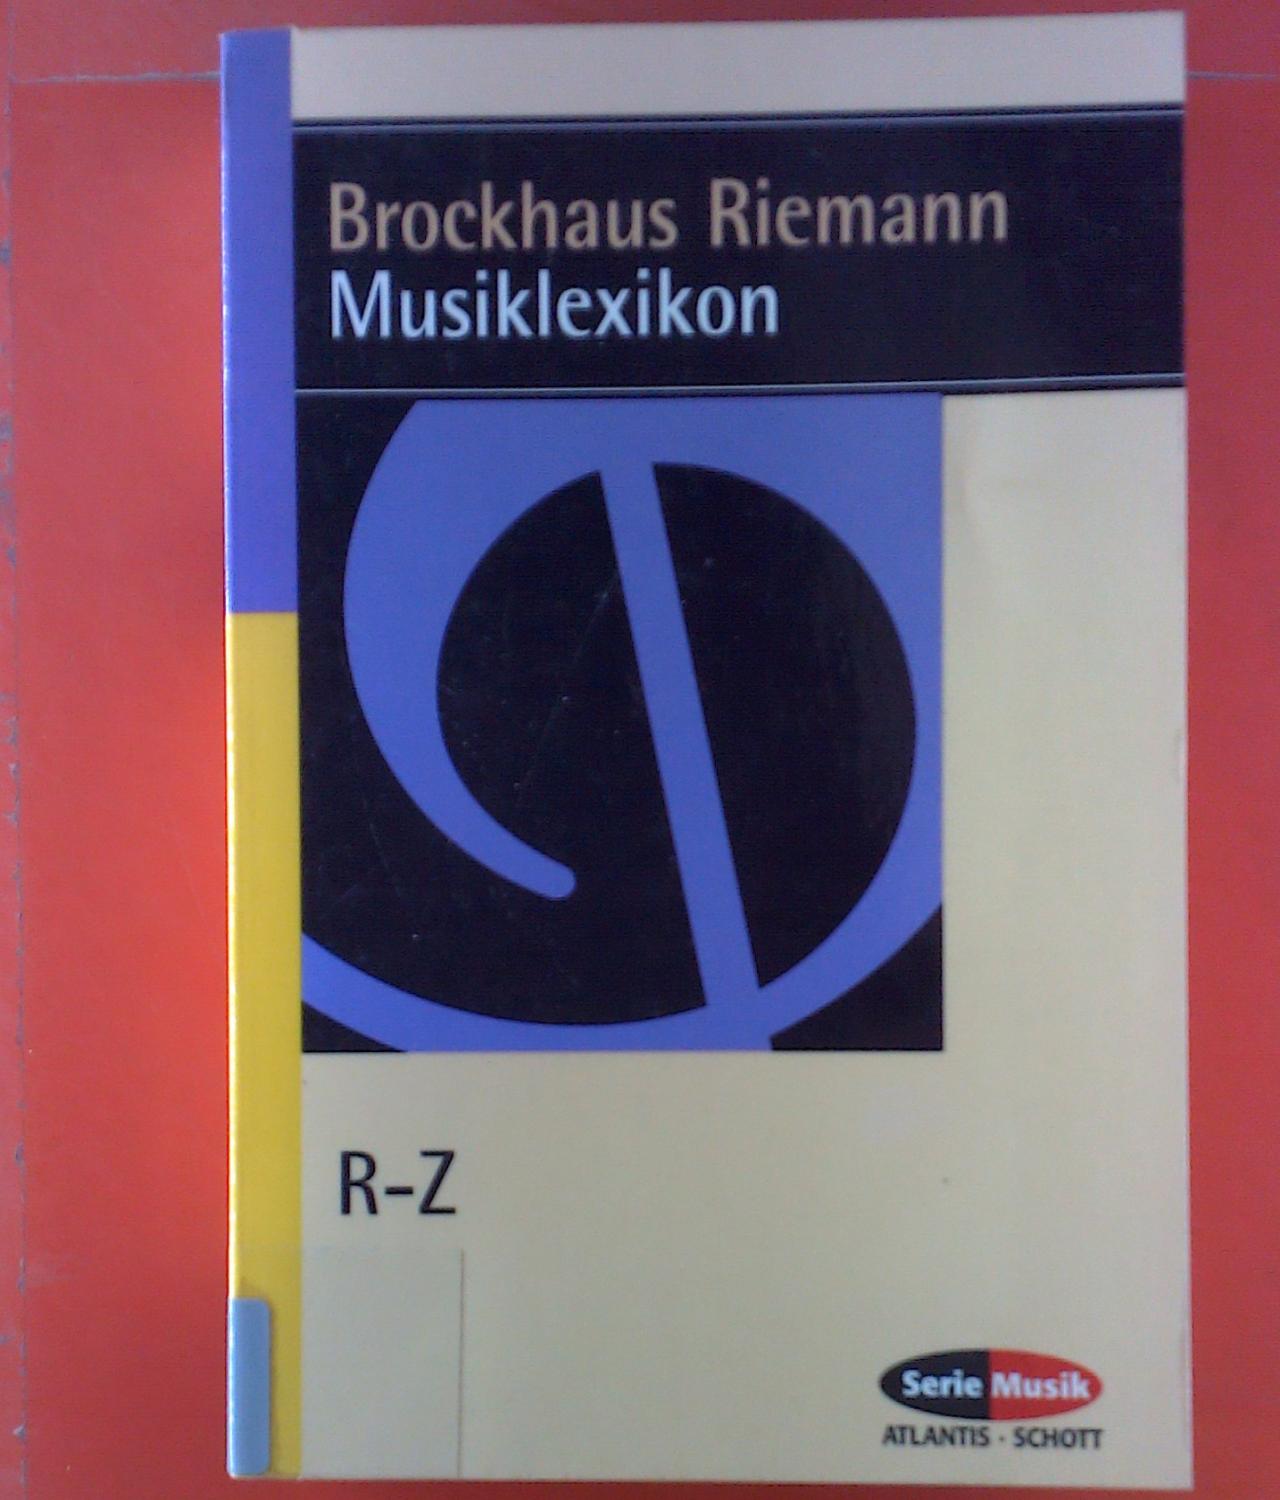 Brockhaus Riemann. Musiklexikon. Vierter Band, R - Z. - Carl Dahlhaus, Hans Heinrich Eggebrecht